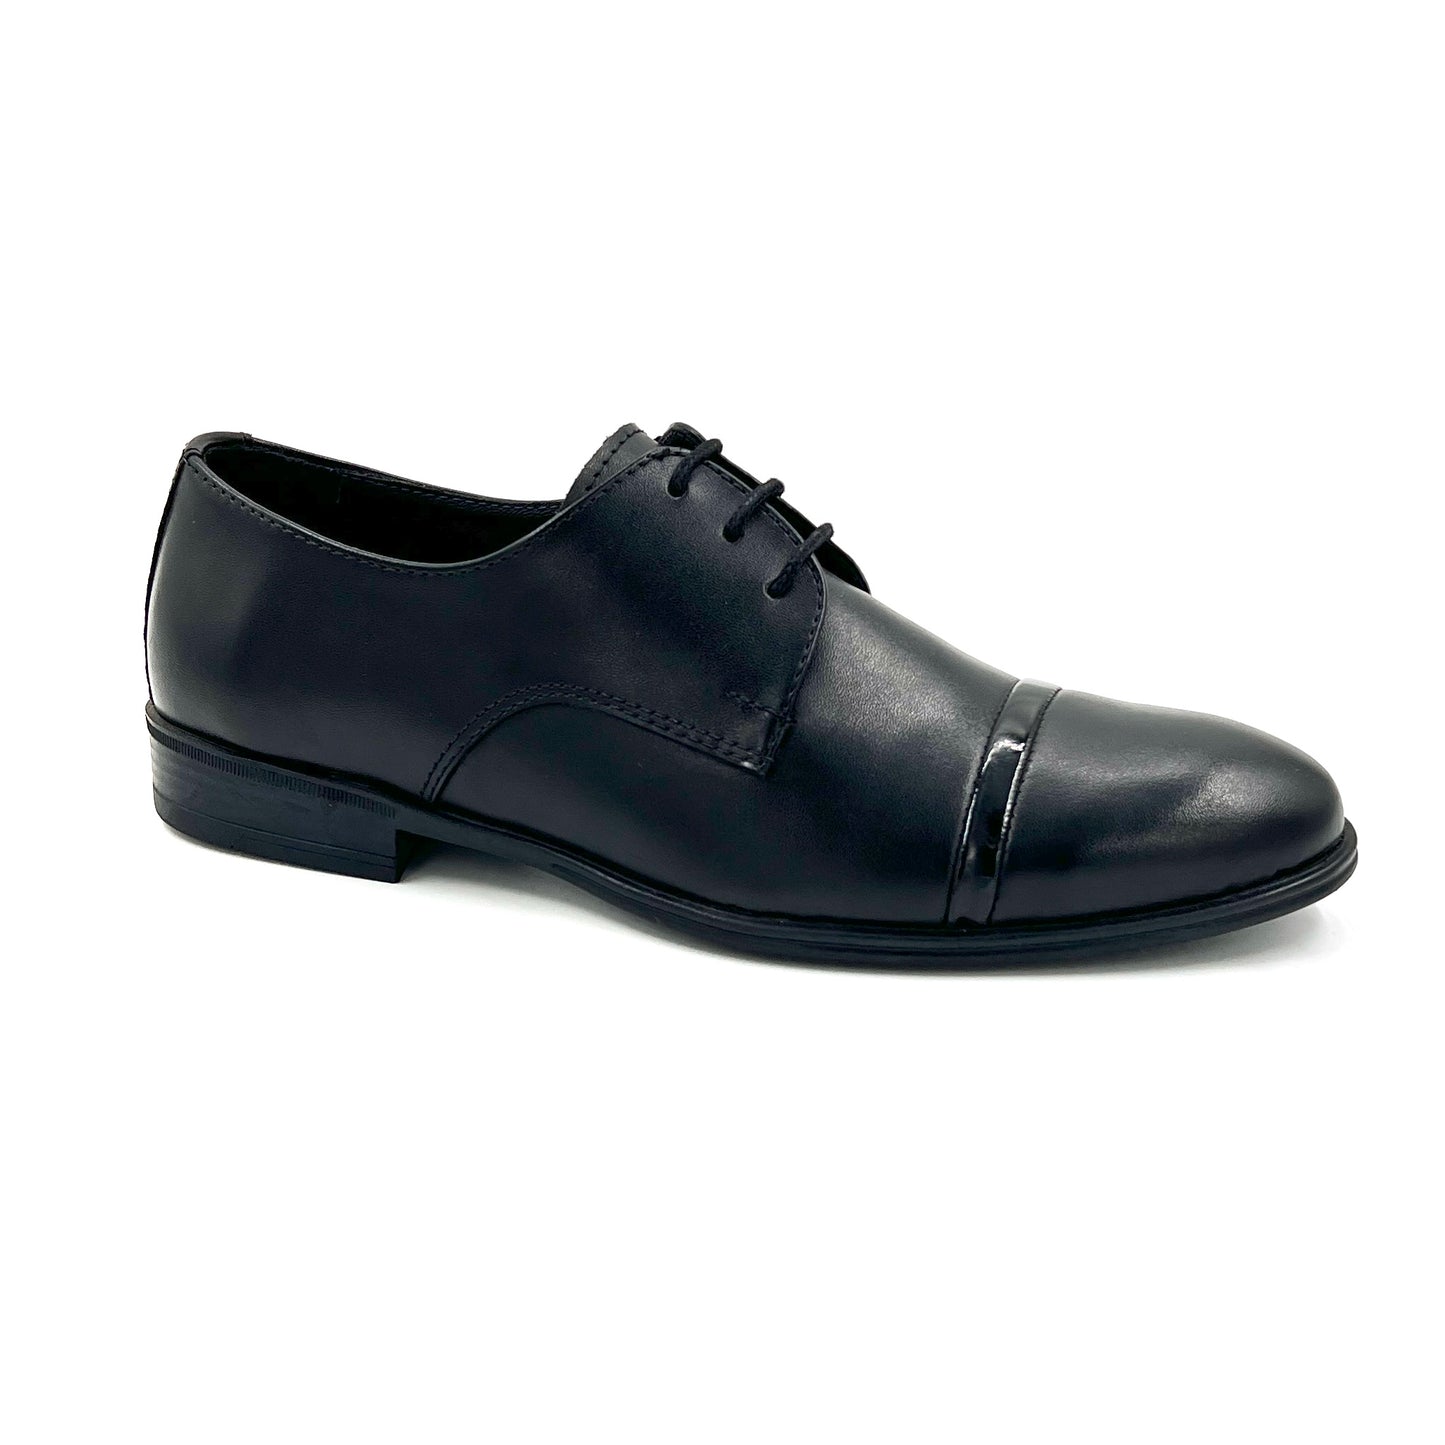 SALE! 2H #160 Black Classic Shoes